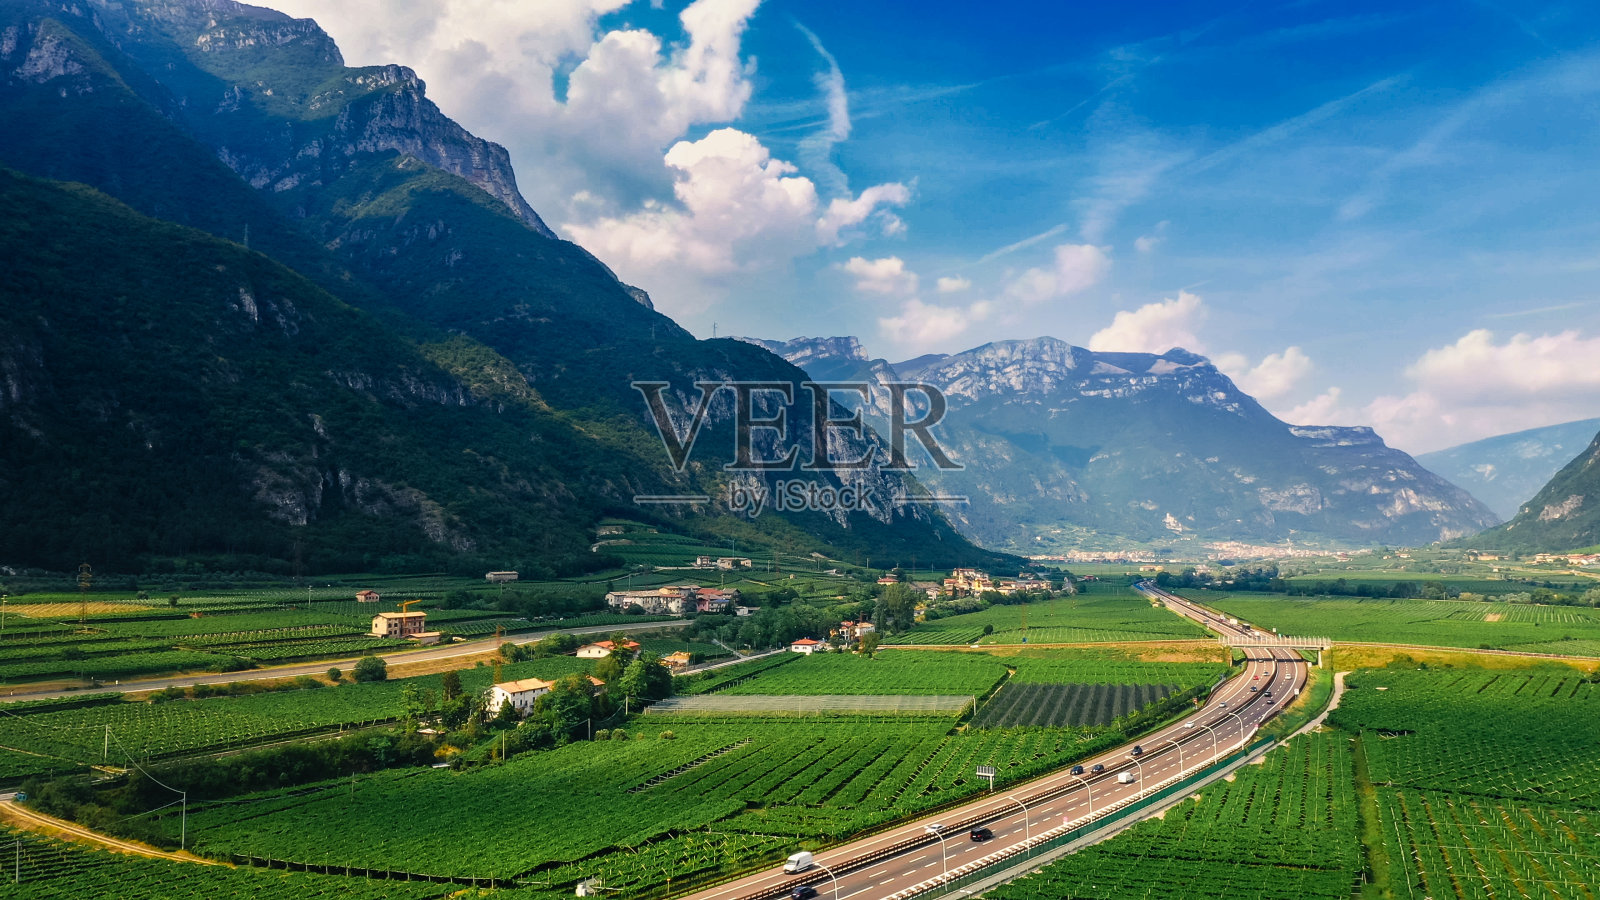 无人机拍摄:位于山区的意大利美丽农田。公路位于山区。采购产品葡萄园，橄榄树，各种蔬菜种植地和农业种植园照片摄影图片